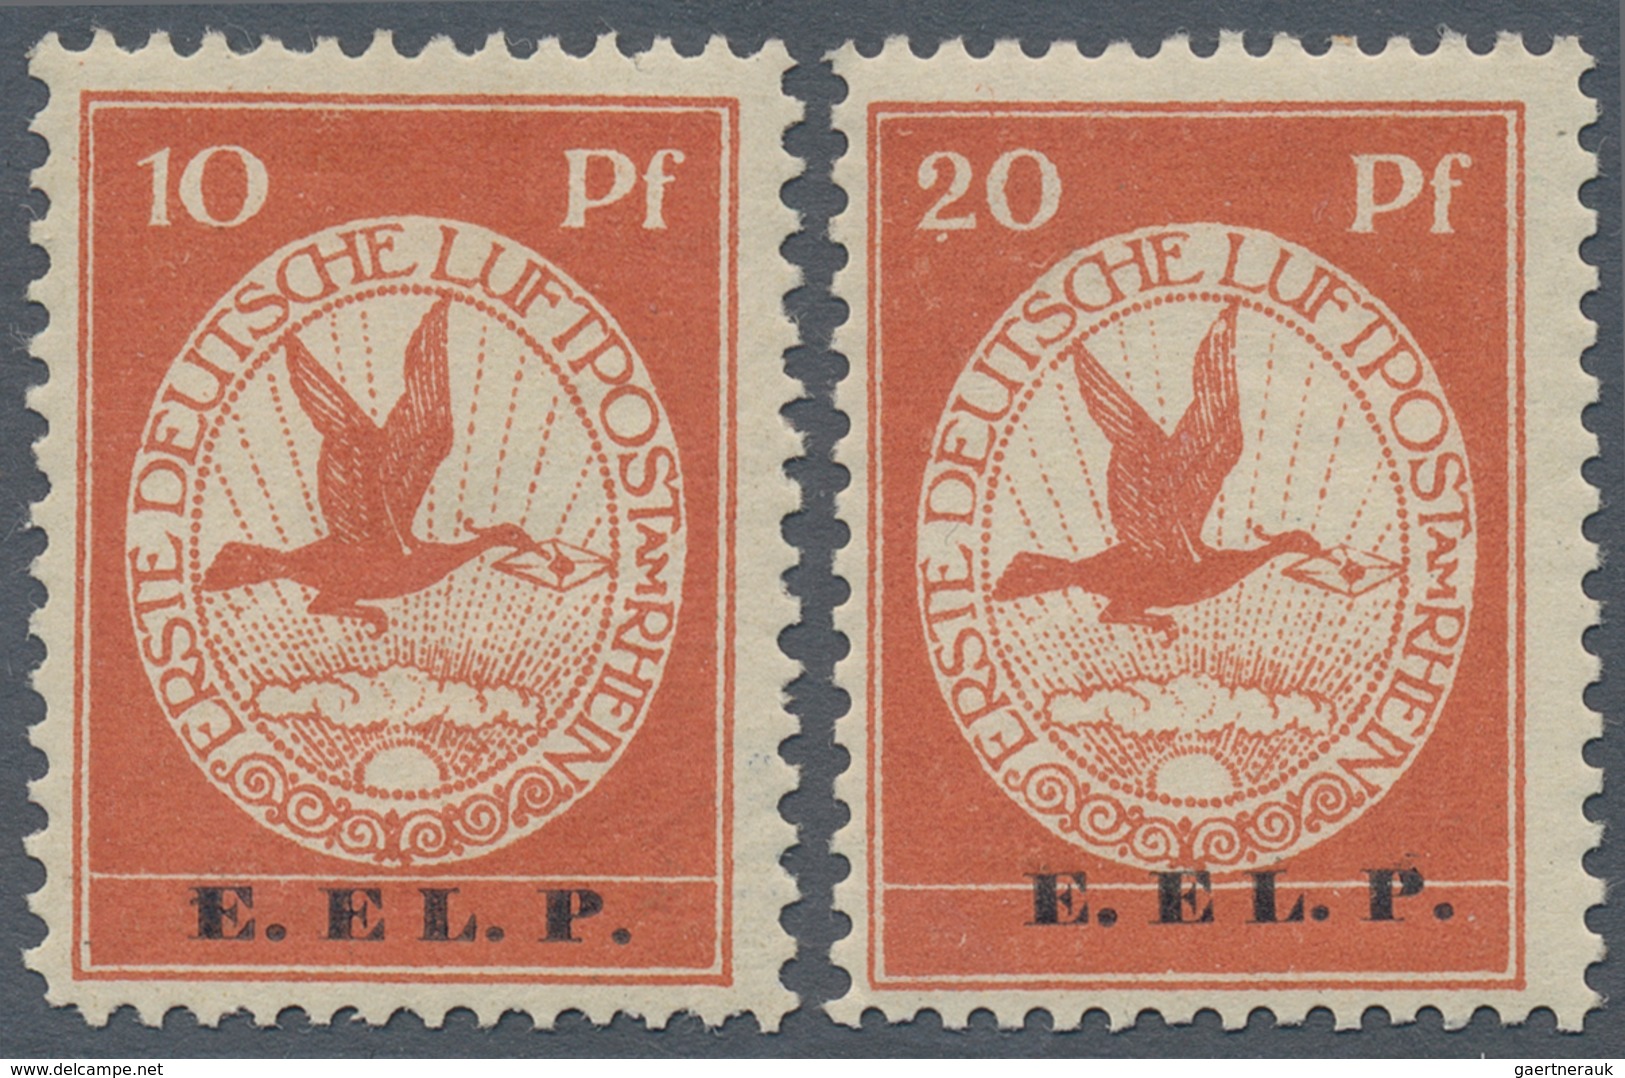 Deutsches Reich - Germania: 1912, 10 Und 20 Pfg. Flugpostmarken Mit Aufdruck“ E. EL. P.“ Komplett, K - Ongebruikt